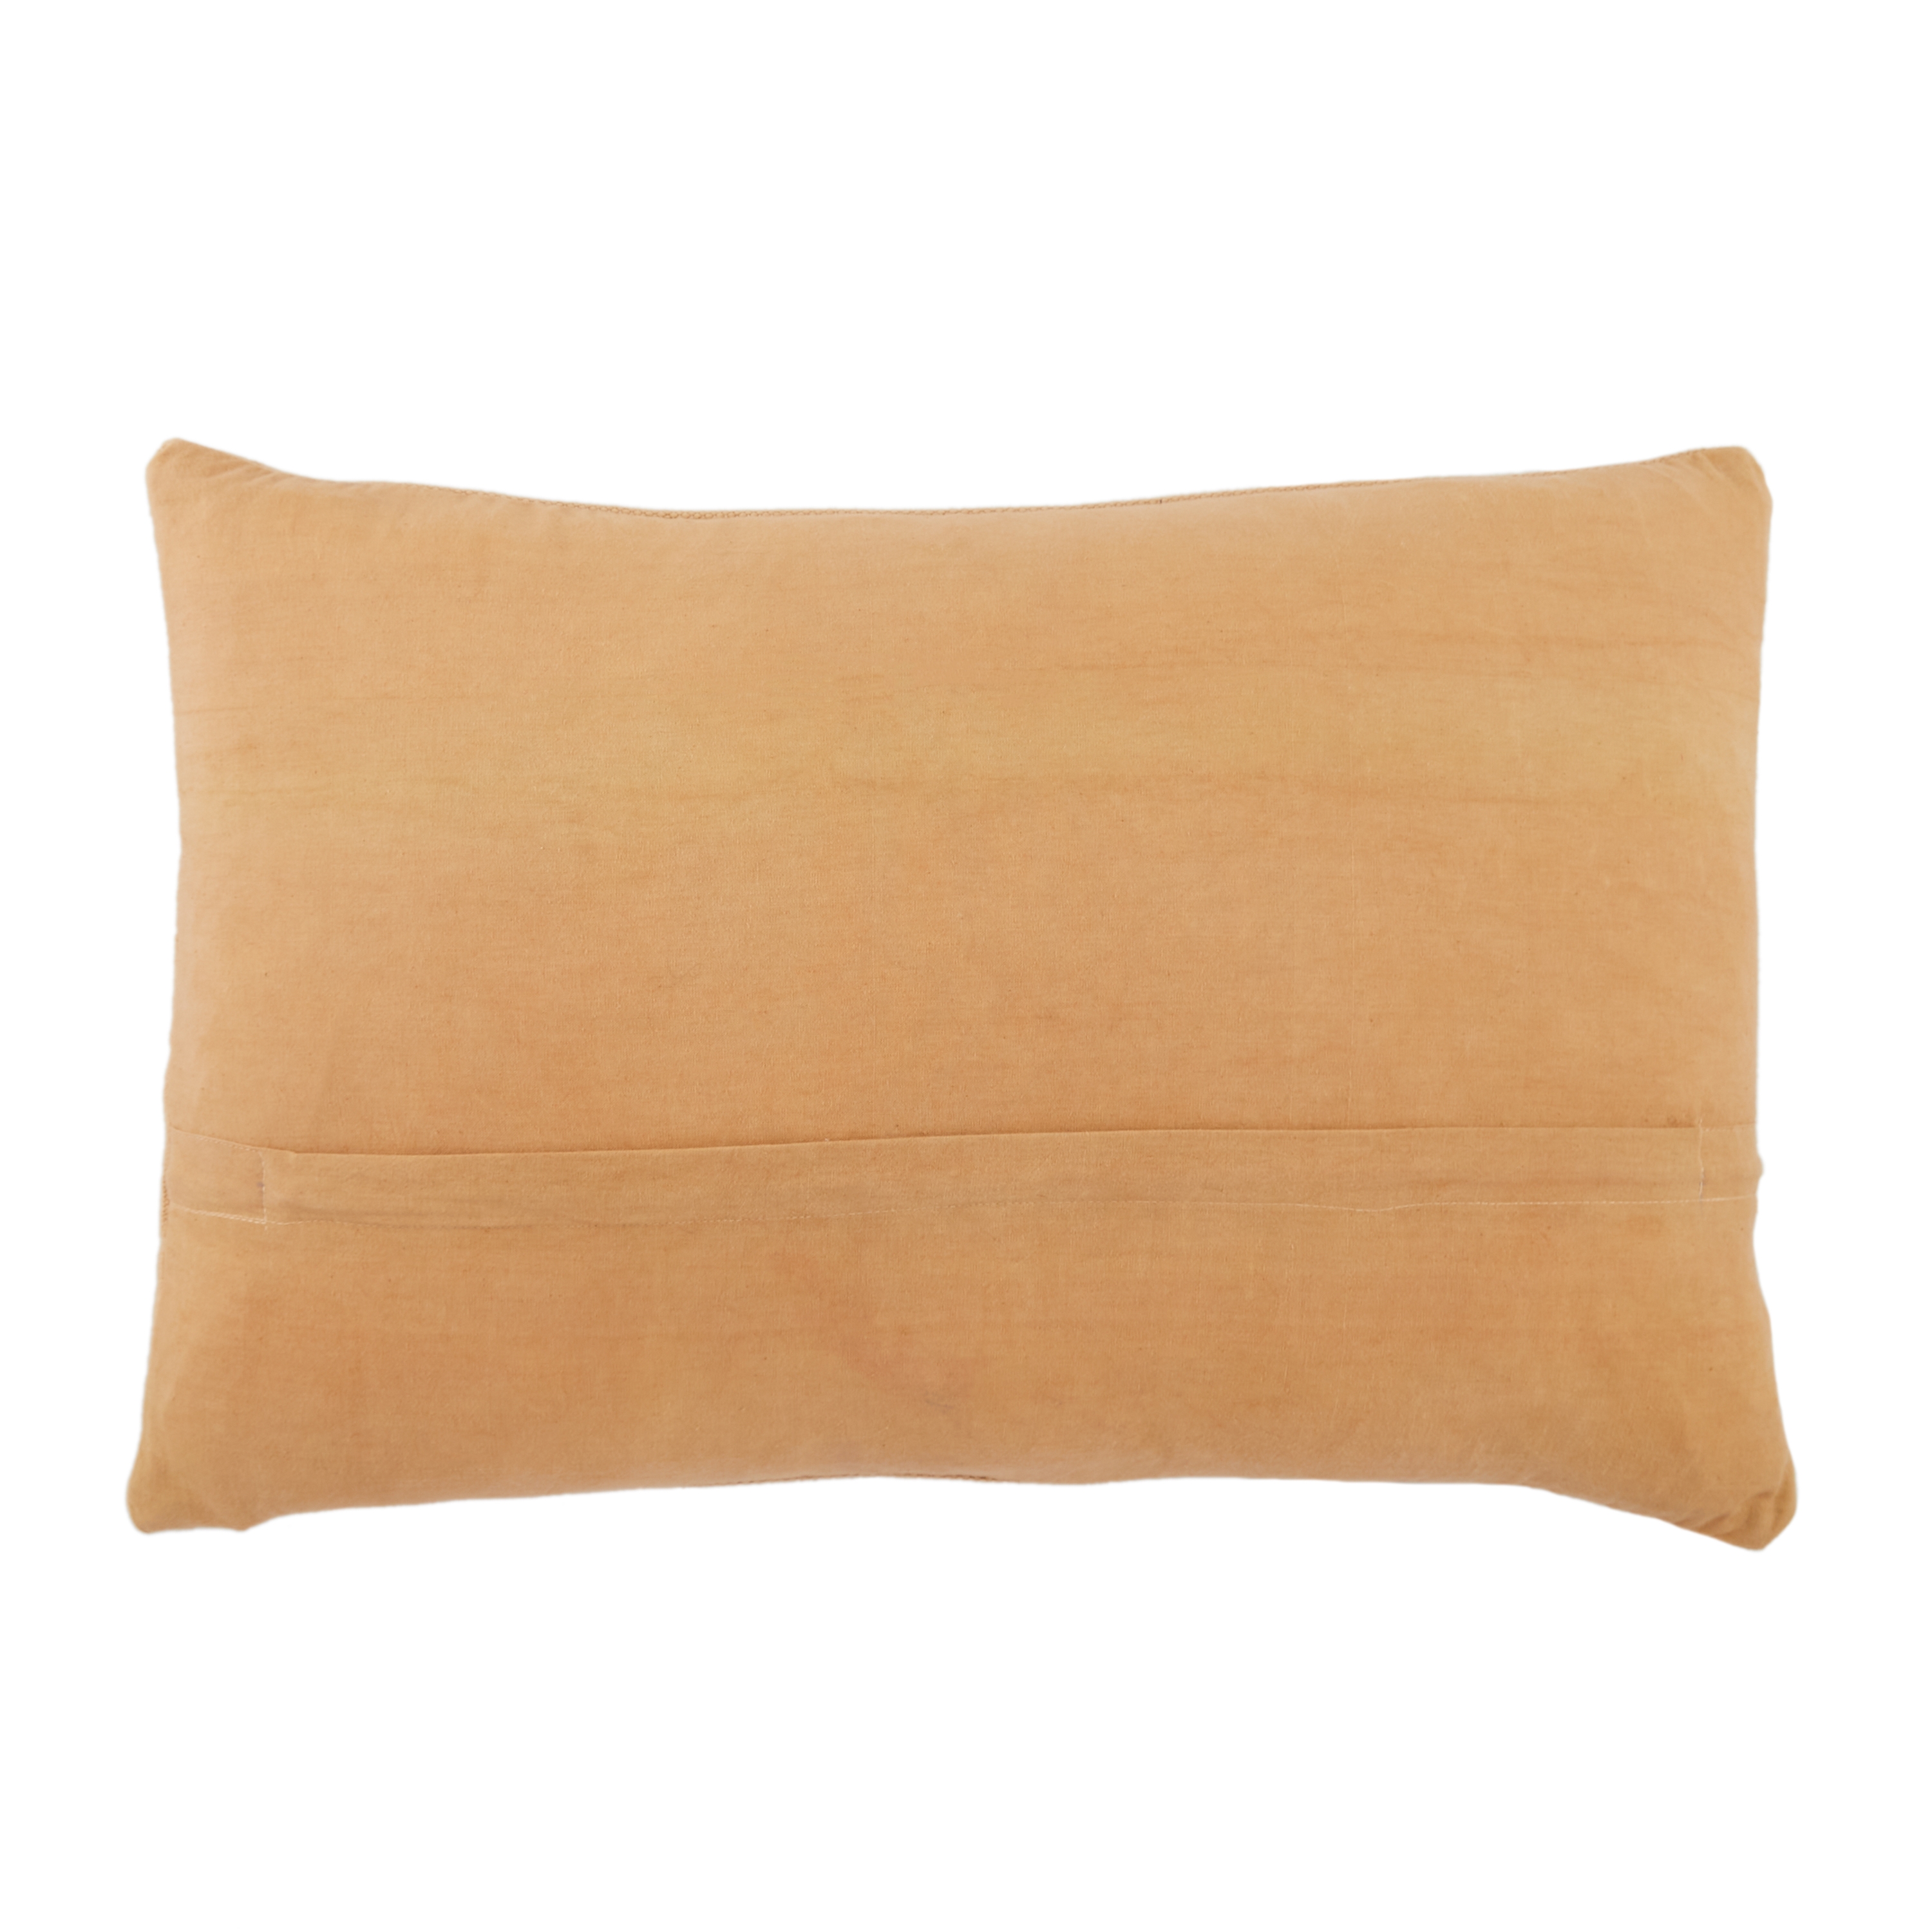 Design (US) Light Tan 16"X24" Pillow - Image 1